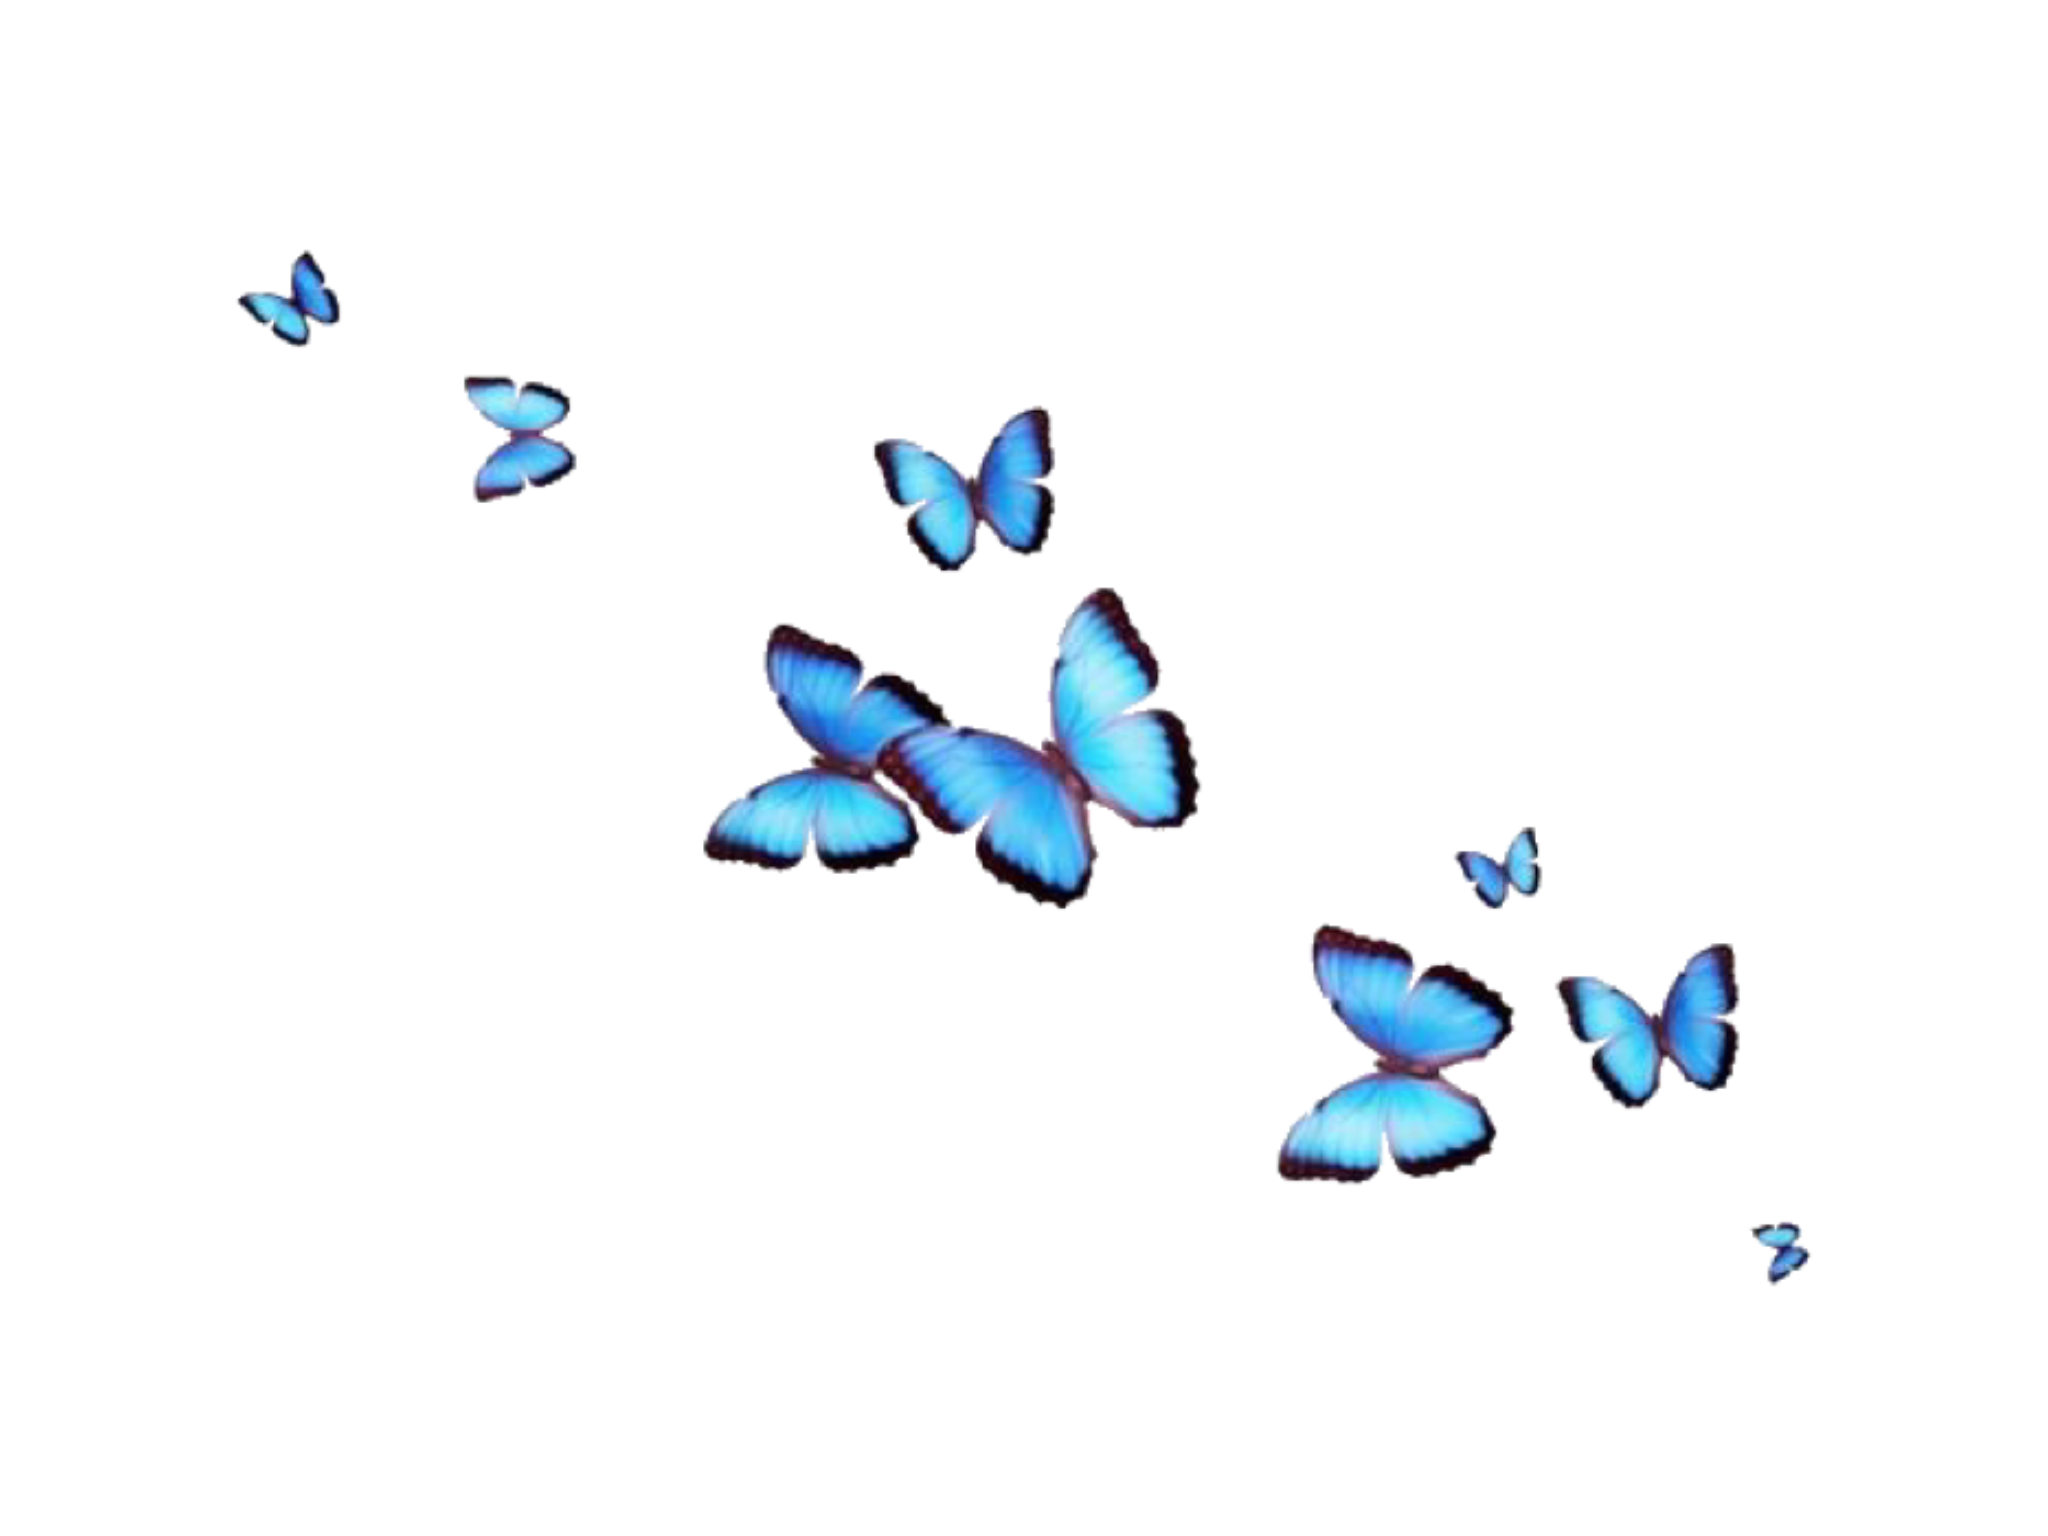 Ảnh bướm thẩm mỹ có nền trong suốt sẽ đem lại cho bạn những trải nghiệm tuyệt vời. Hãy cùng chiêm ngưỡng những hình ảnh tuyệt đẹp của chú bướm nền trong suốt và bị đắm chìm trong sự tinh tế và thanh lịch của chúng.